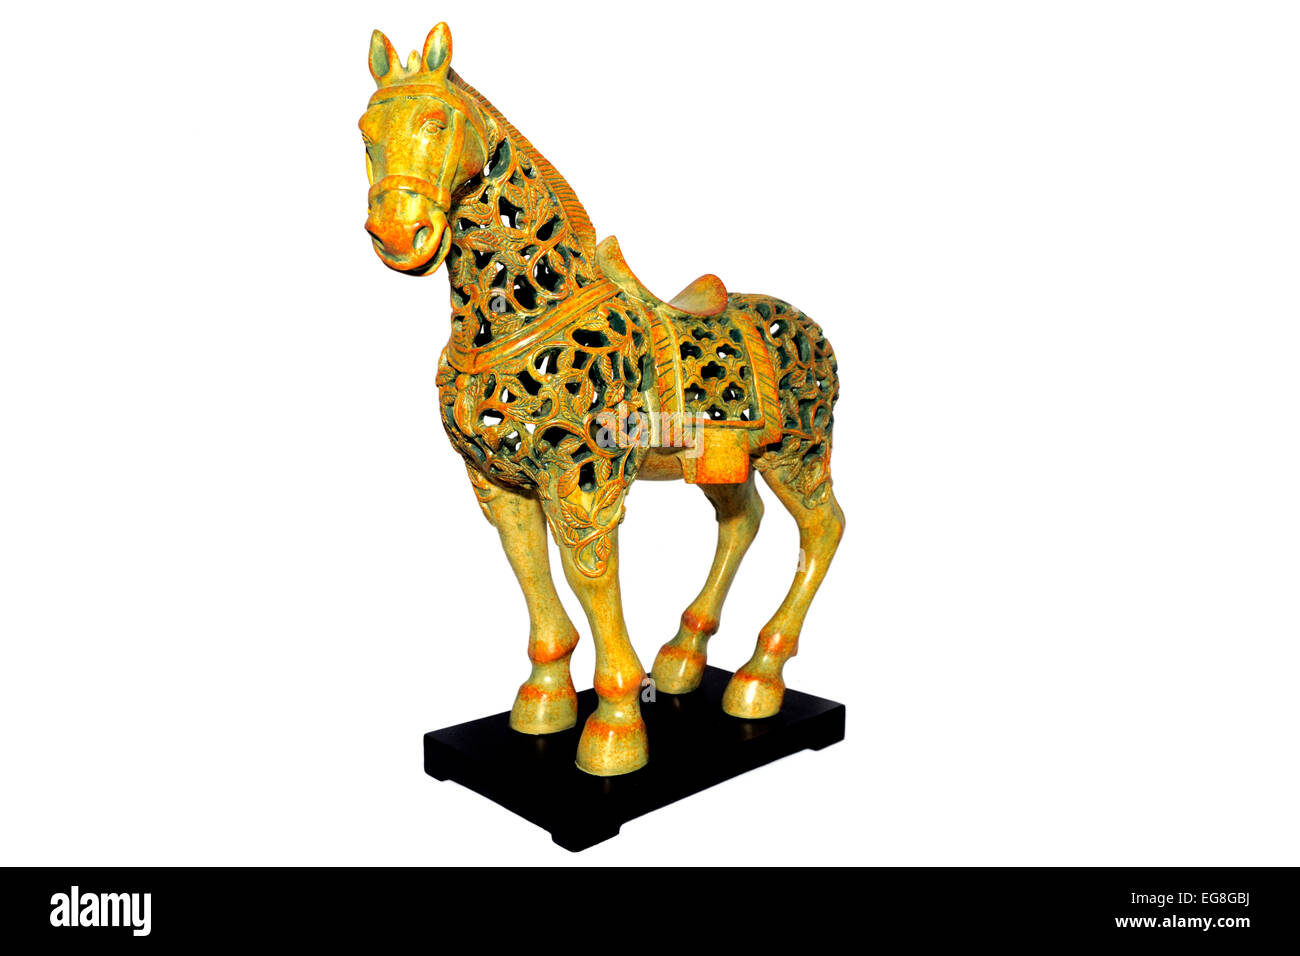 Un moderno copia de una dinastía Tang caballo filigrana Foto de stock